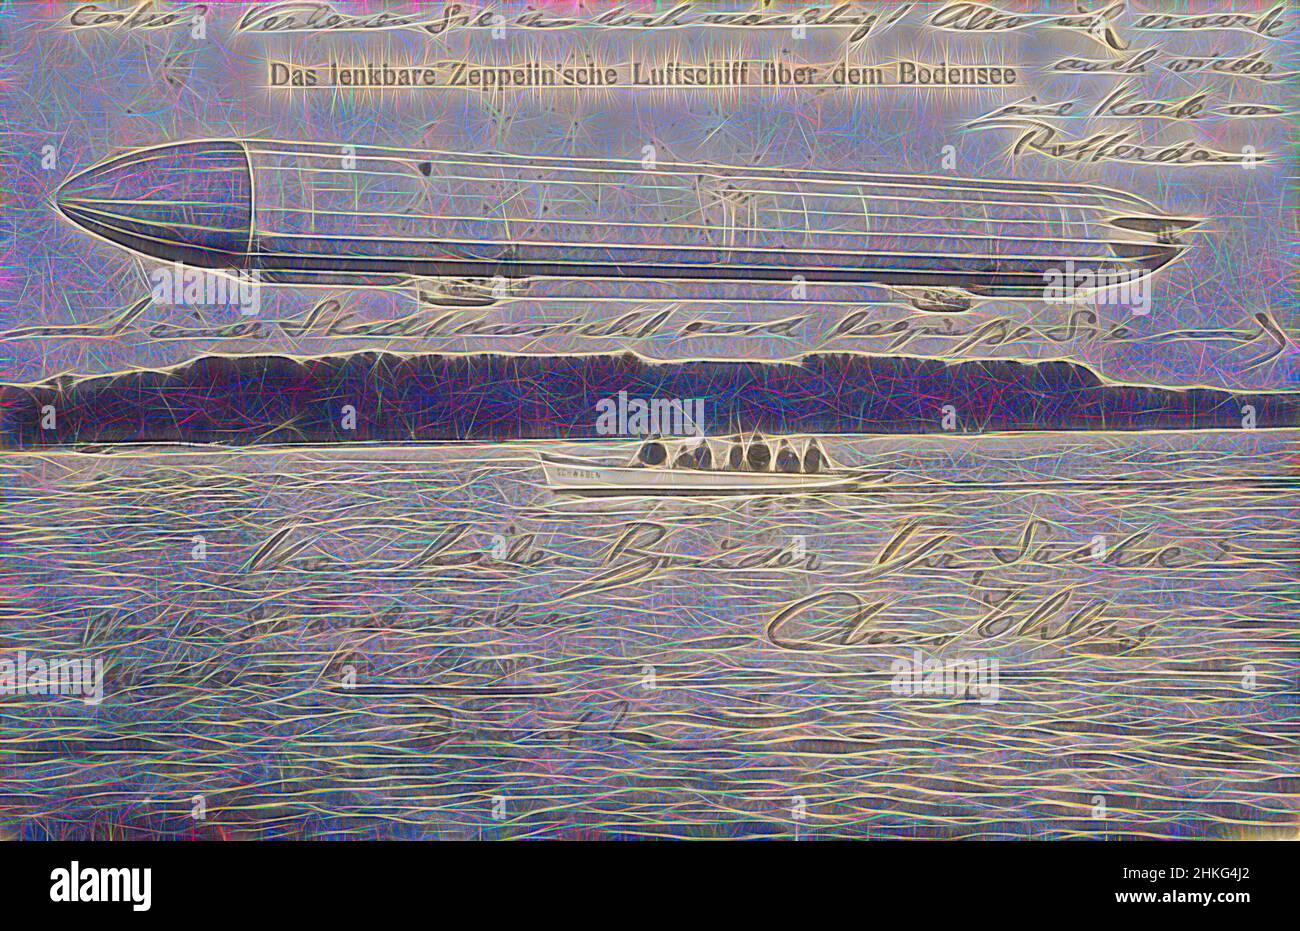 Inspiré par Zeppelin au-dessus du lac de Constance, Das lenkbare Zeppelin'sche Luftschiff über dem Bodensee, Allemagne, c. 1906 - avant 15-sept-1908, papier, collotype, hauteur 89 mm × largeur 137 mm, réimaginé par Artotop. L'art classique réinventé avec une touche moderne. Conception de lumière chaleureuse et gaie, de luminosité et de rayonnement de lumière. La photographie s'inspire du surréalisme et du futurisme, embrassant l'énergie dynamique de la technologie moderne, du mouvement, de la vitesse et révolutionne la culture Banque D'Images